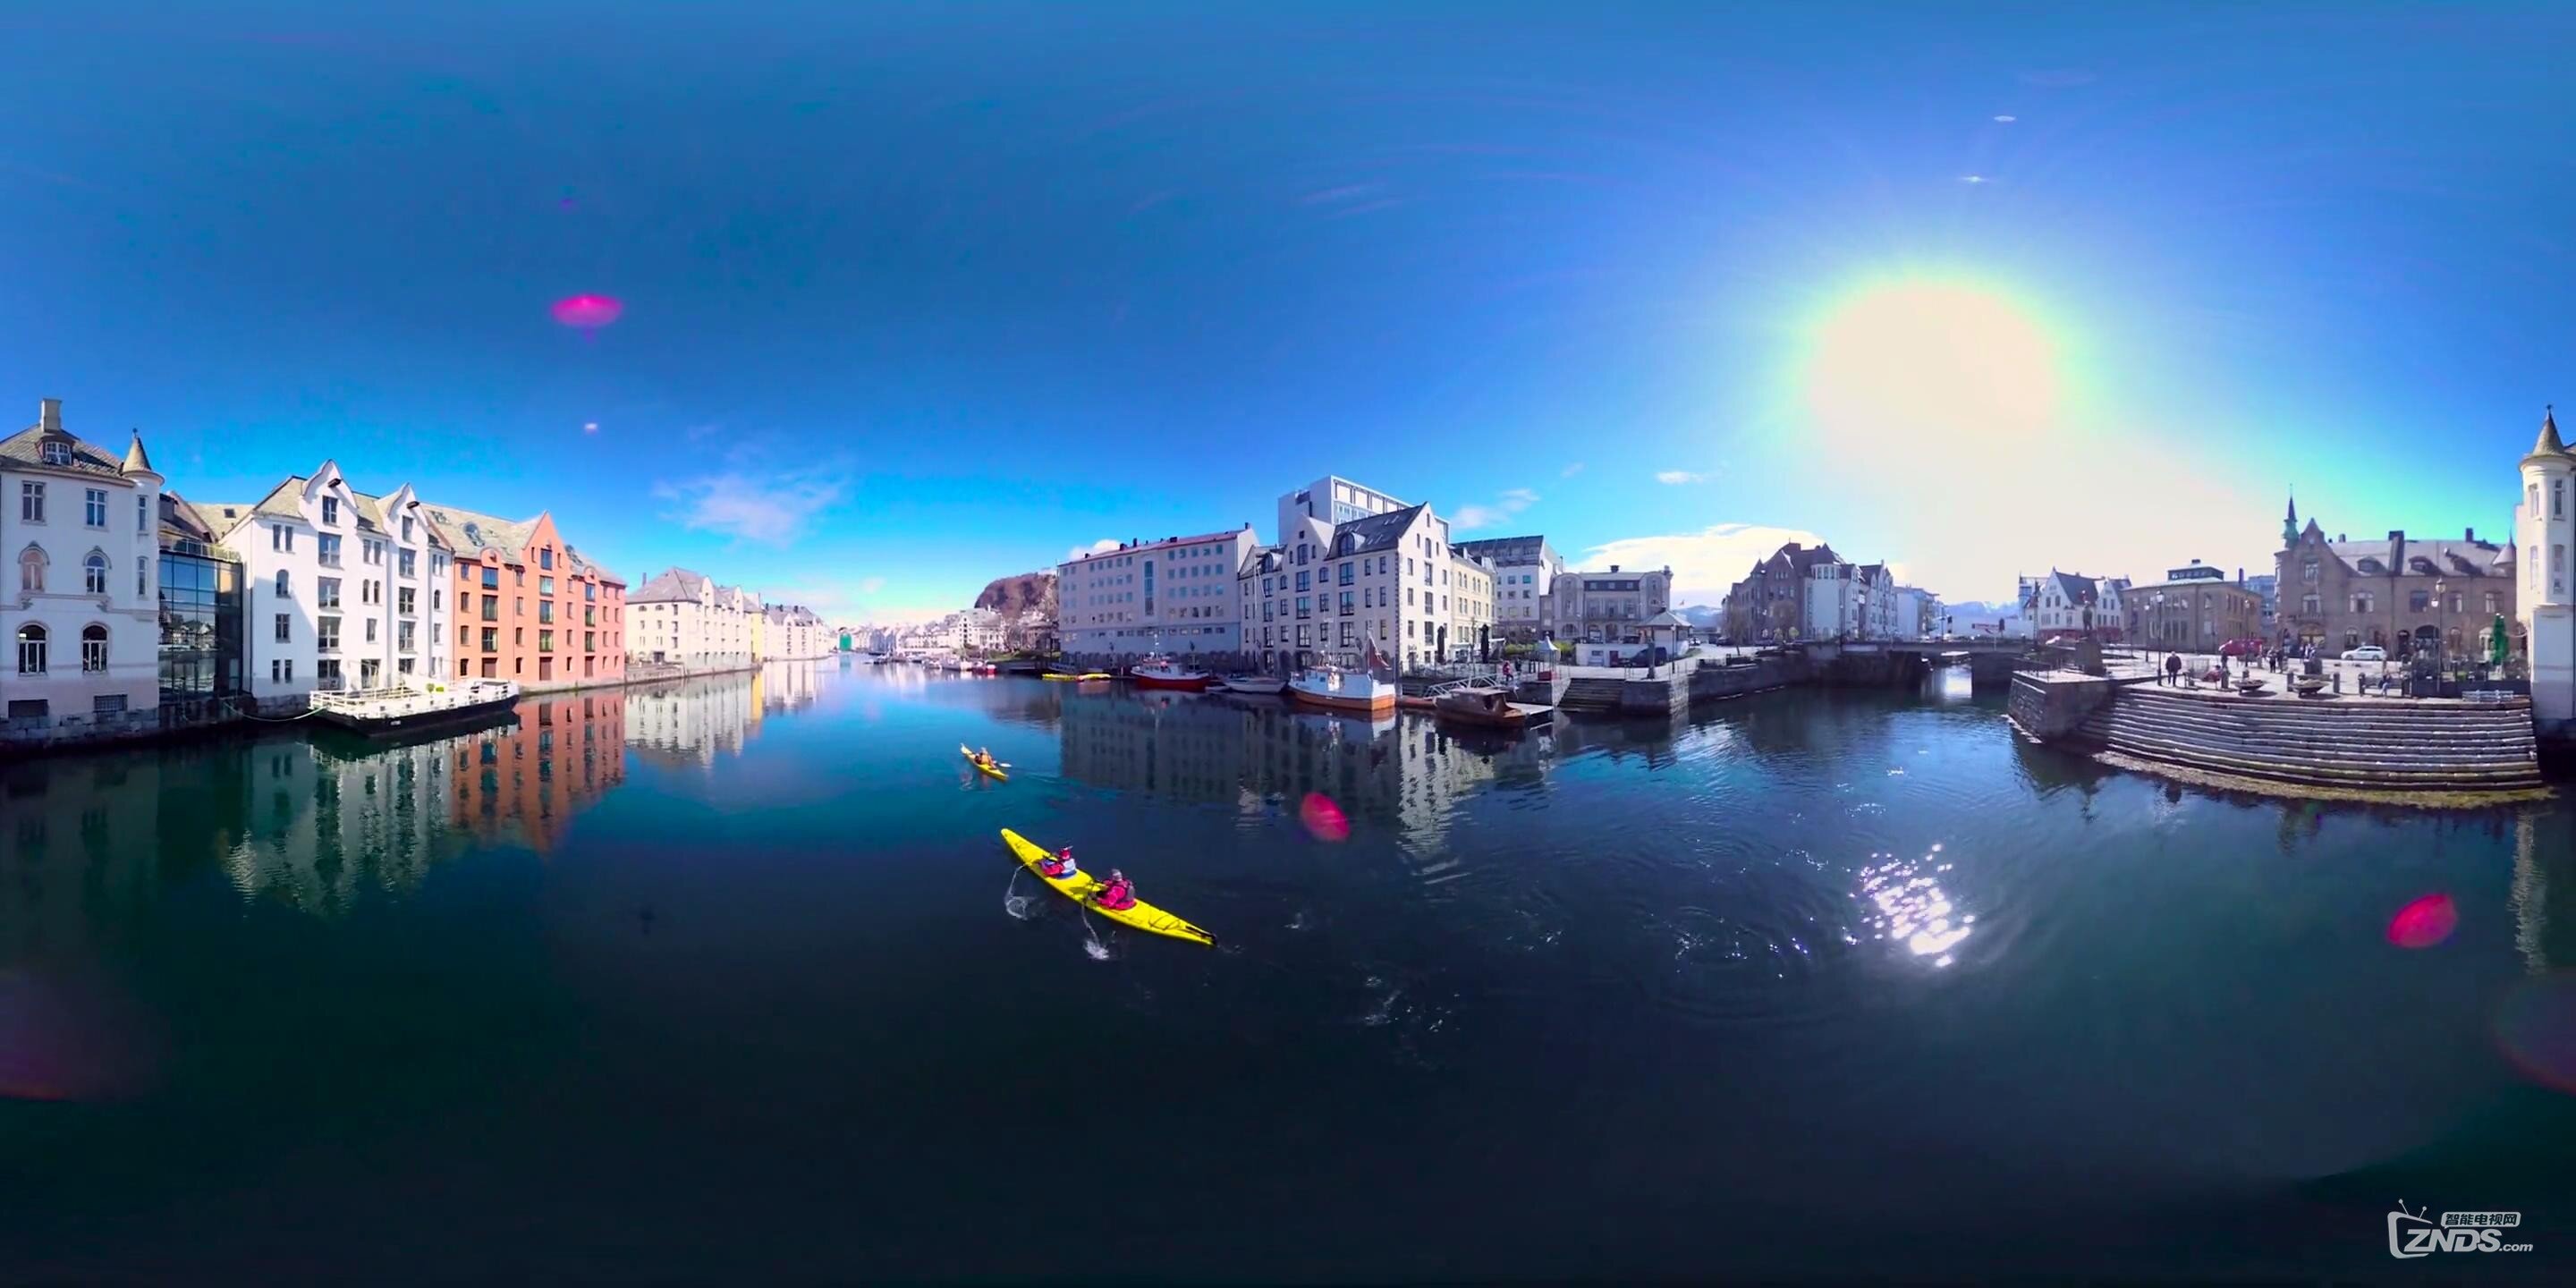 【360度VR全景视频】小镇的温馨,大欧洲的格